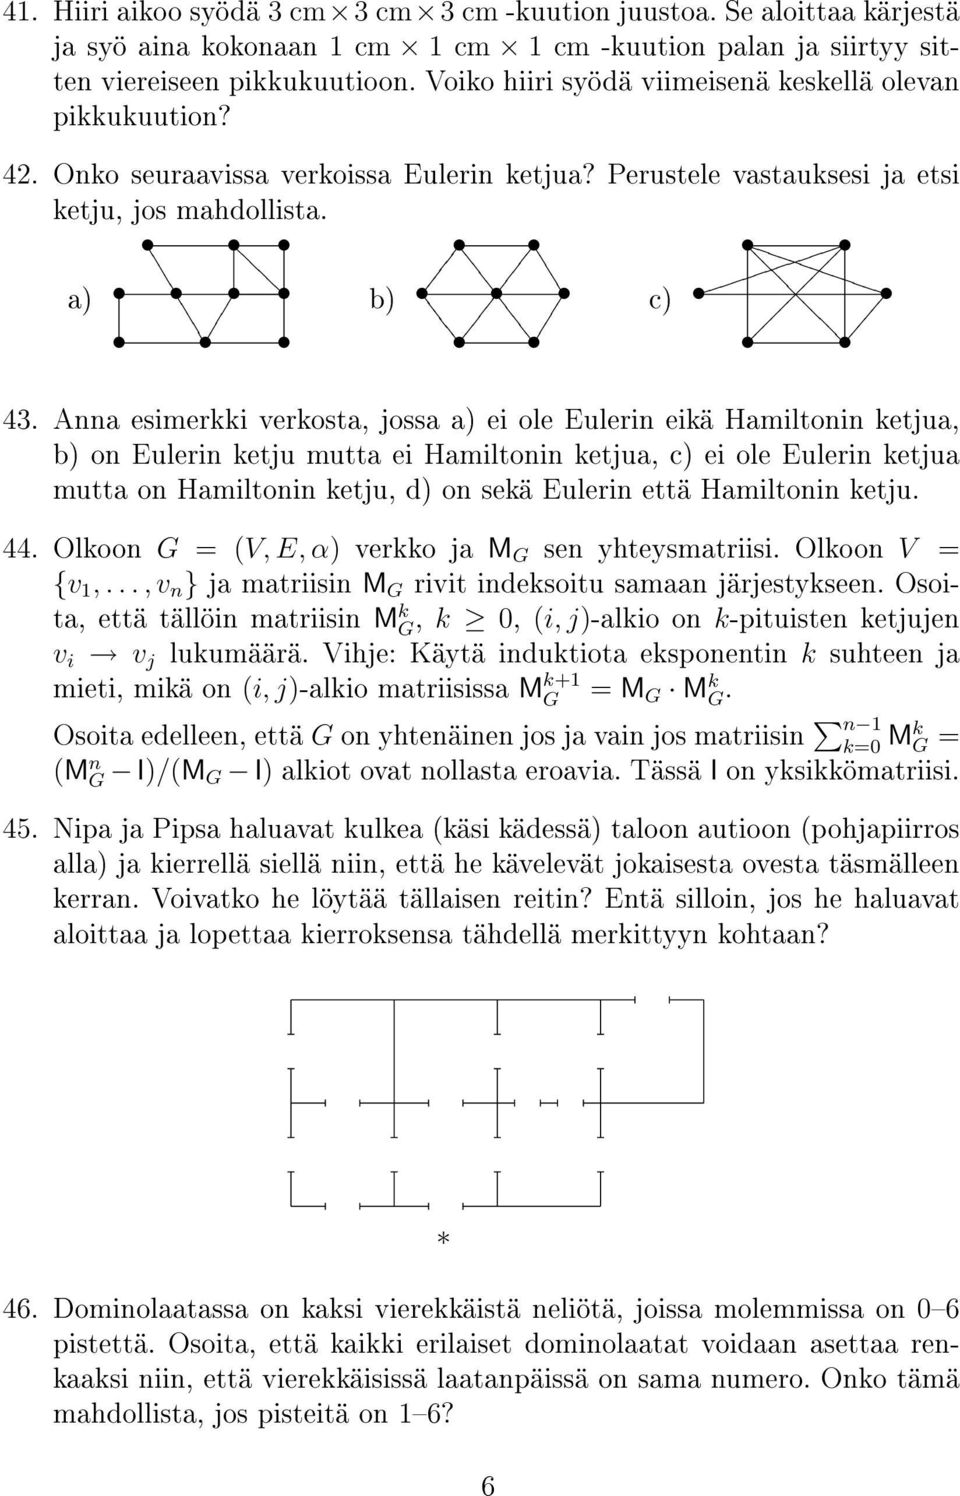 Anna esimerkki verkosta, jossa a) ei ole Eulerin eikä Hamiltonin ketjua, b) on Eulerin ketju mutta ei Hamiltonin ketjua, c) ei ole Eulerin ketjua mutta on Hamiltonin ketju, d) on sekä Eulerin että